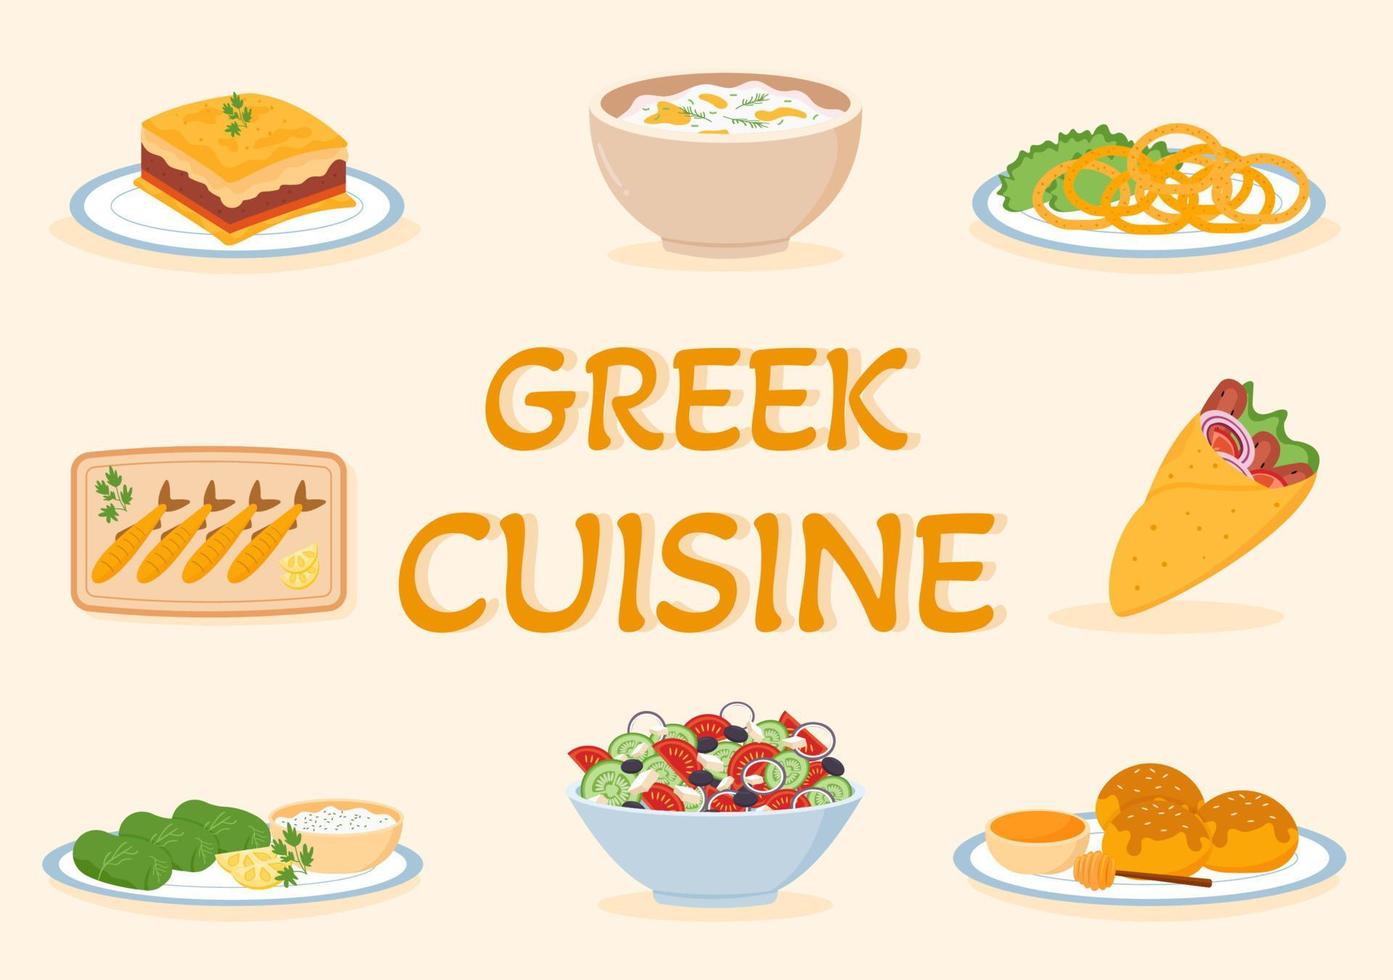 Grieks keuken restaurant reeks menu heerlijk gerechten traditioneel of nationaal voedsel in vlak tekenfilm hand- getrokken sjabloon illustratie vector